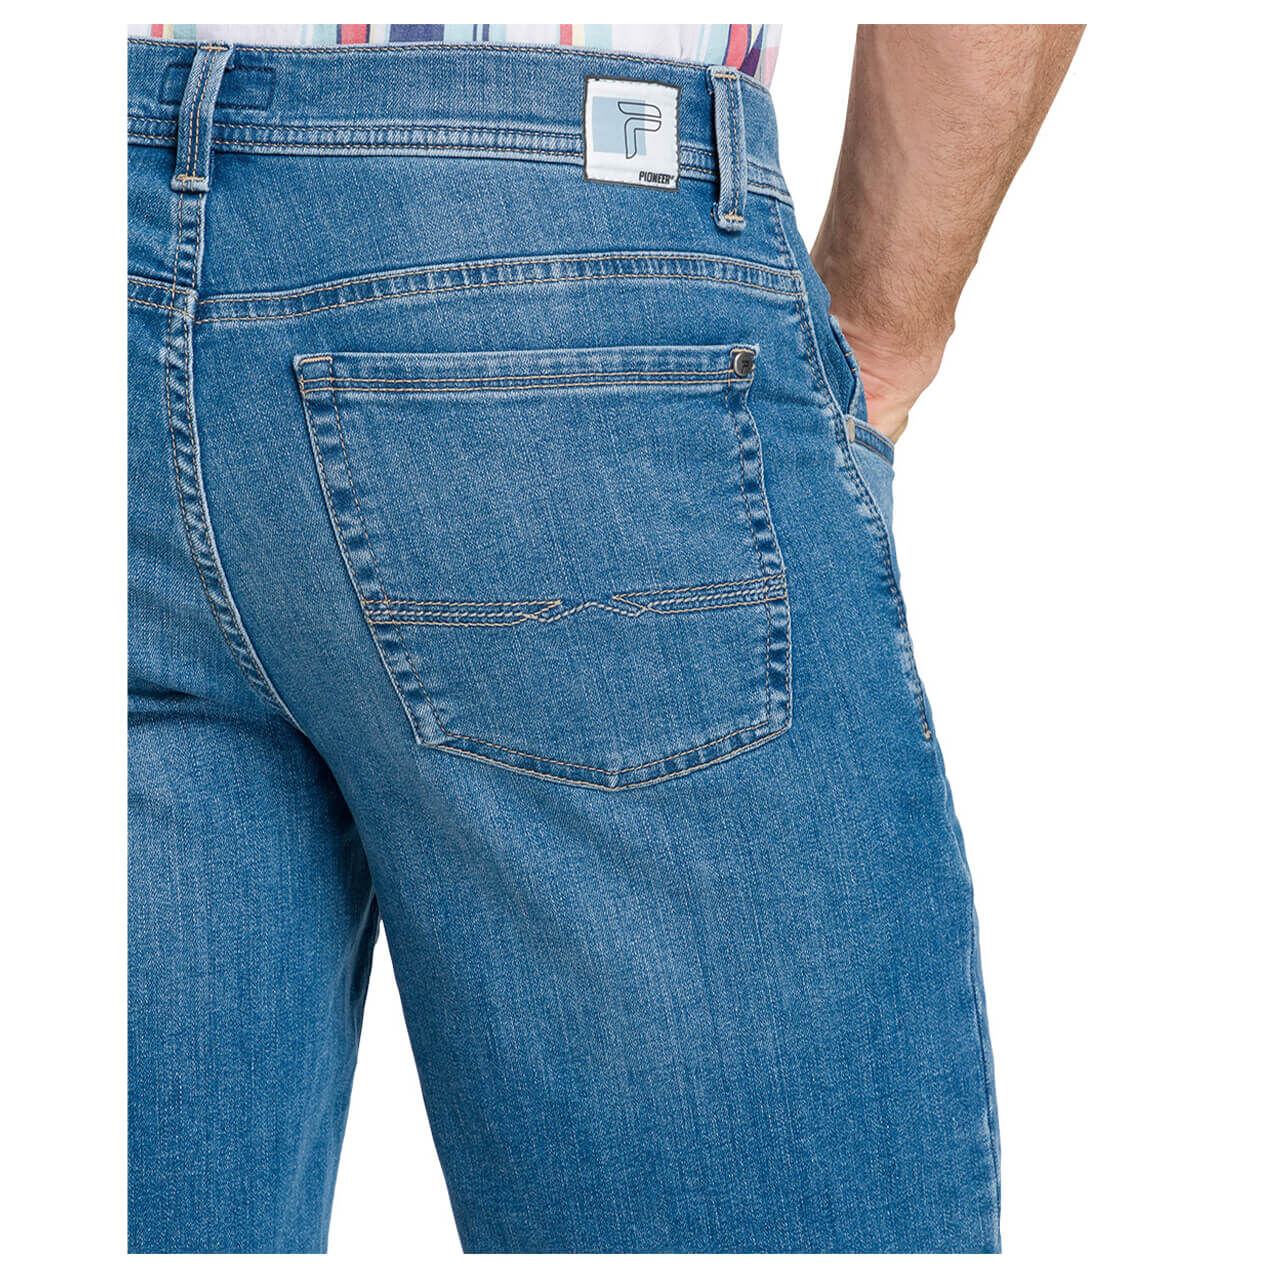 Pioneer Jeans Finn Megaflex Bermuda für Herren in Hellblau angewaschen, FarbNr.: 6835